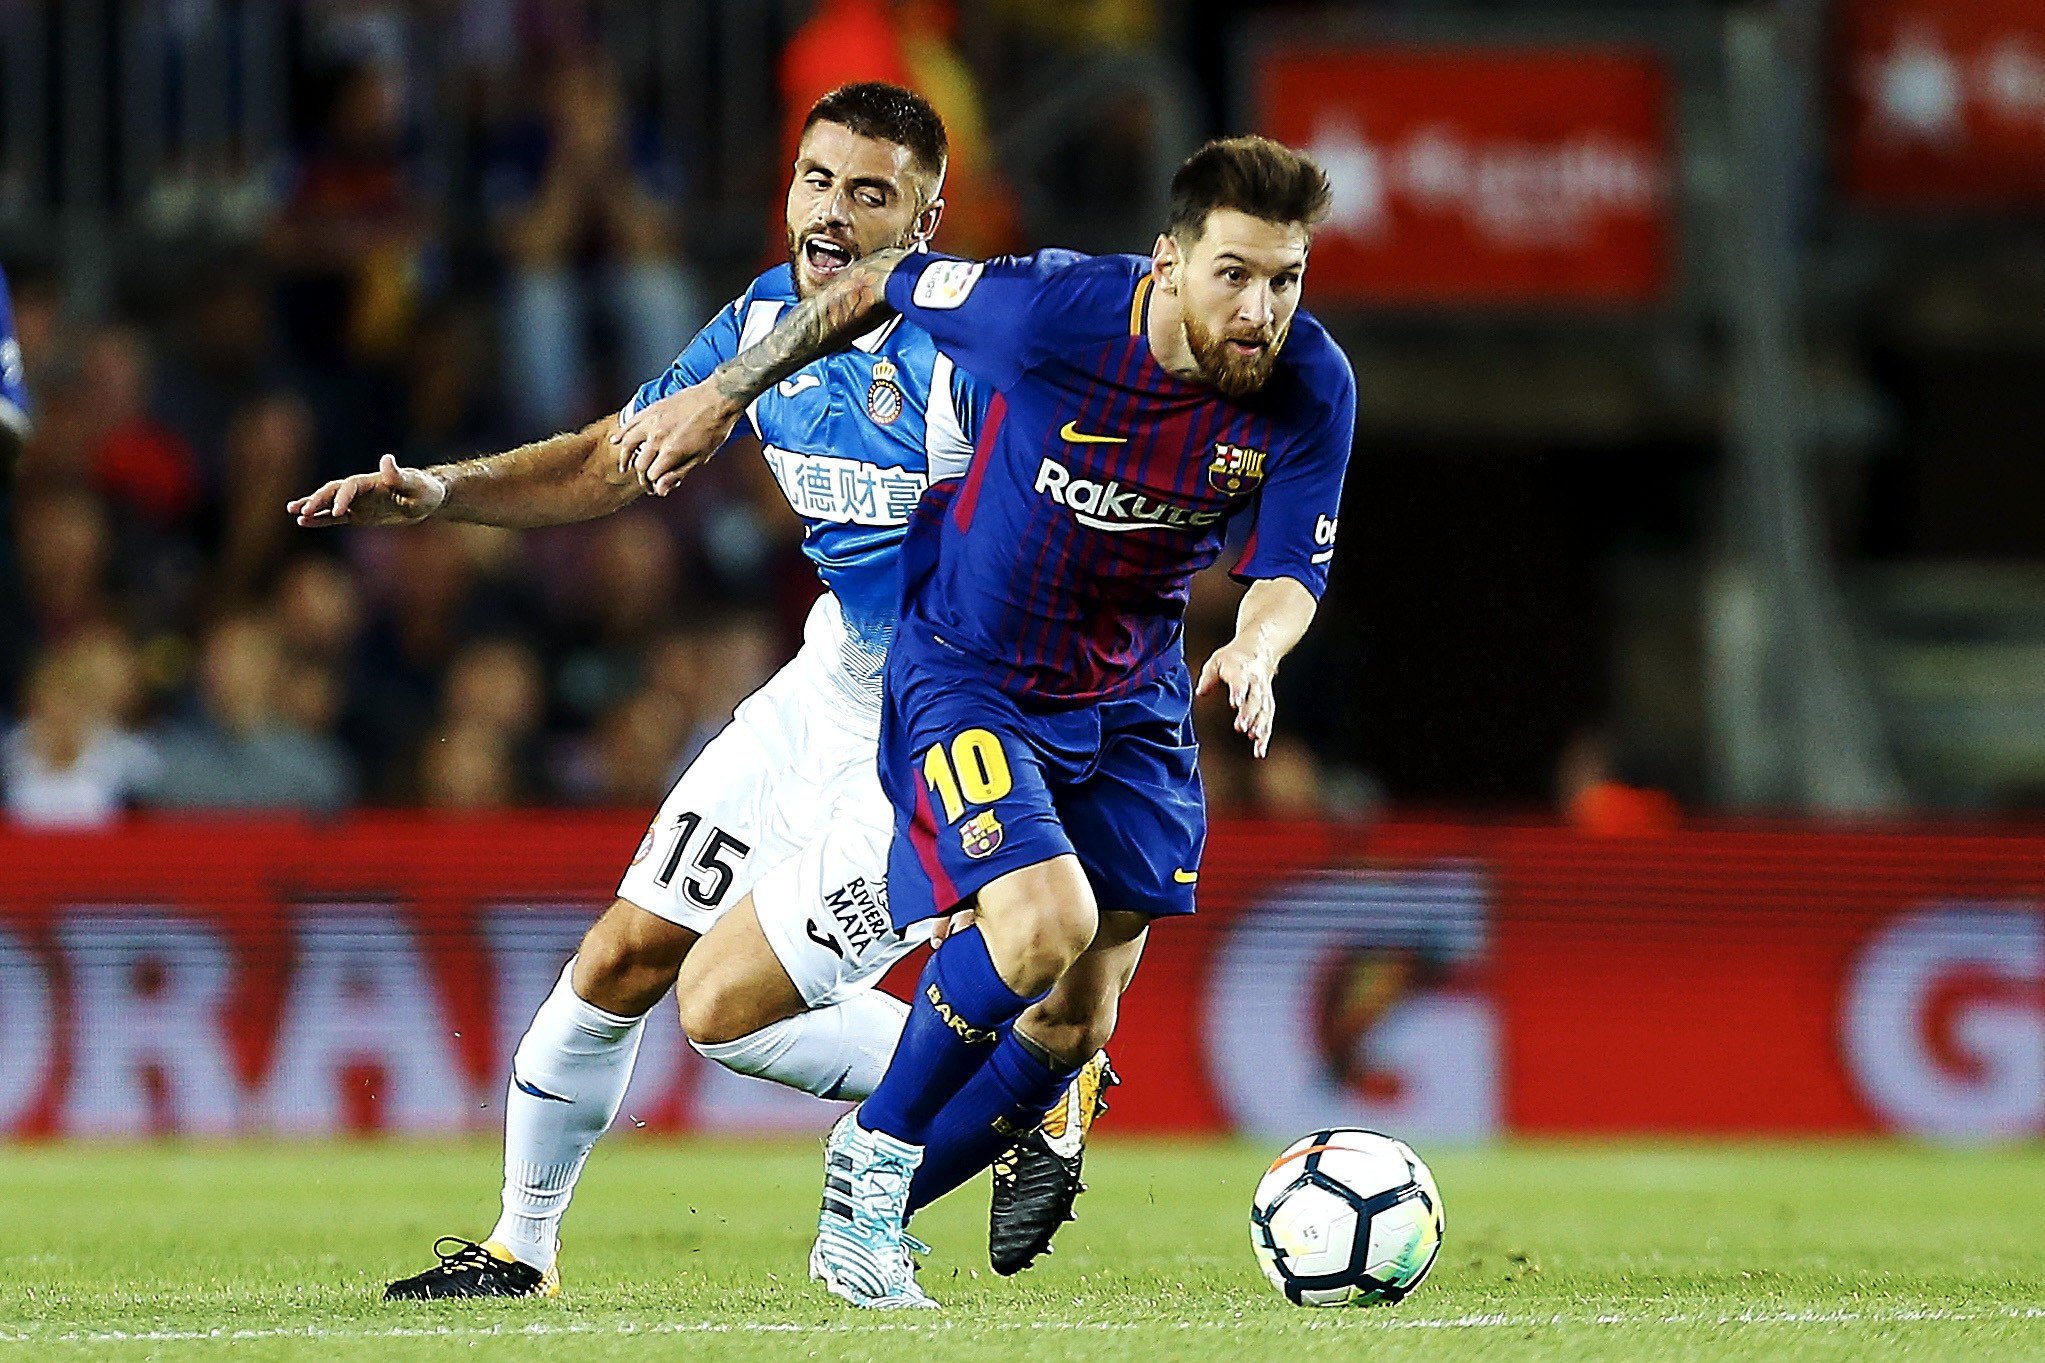 L'Espanyol es recorda del Barça per promocionar el partit contra el Llevant